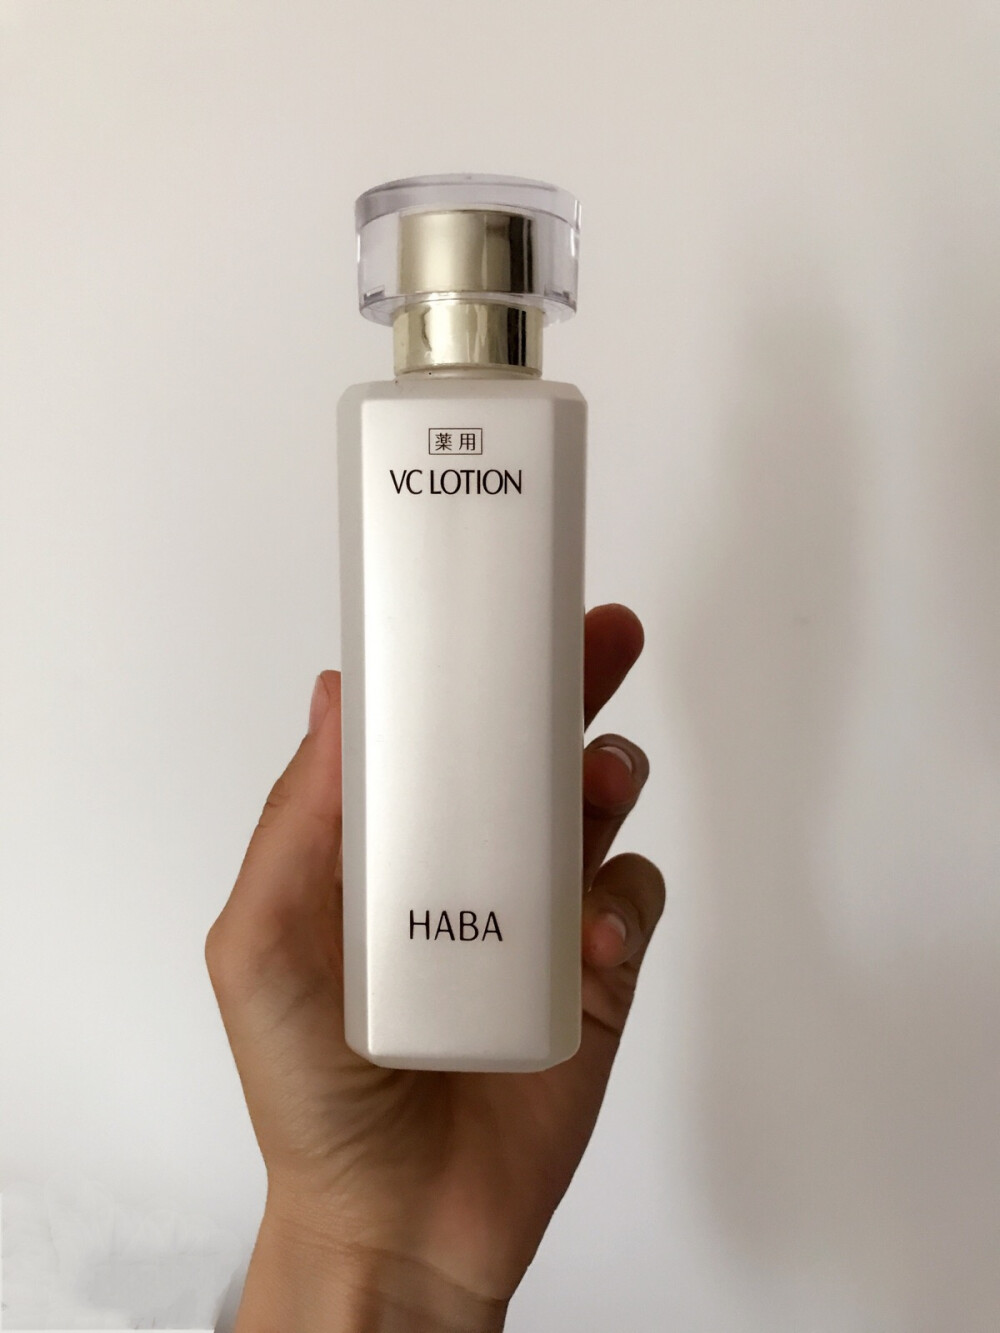 HABAVC水，很不错，孕妇可用美白水，日本药妆值得推荐。